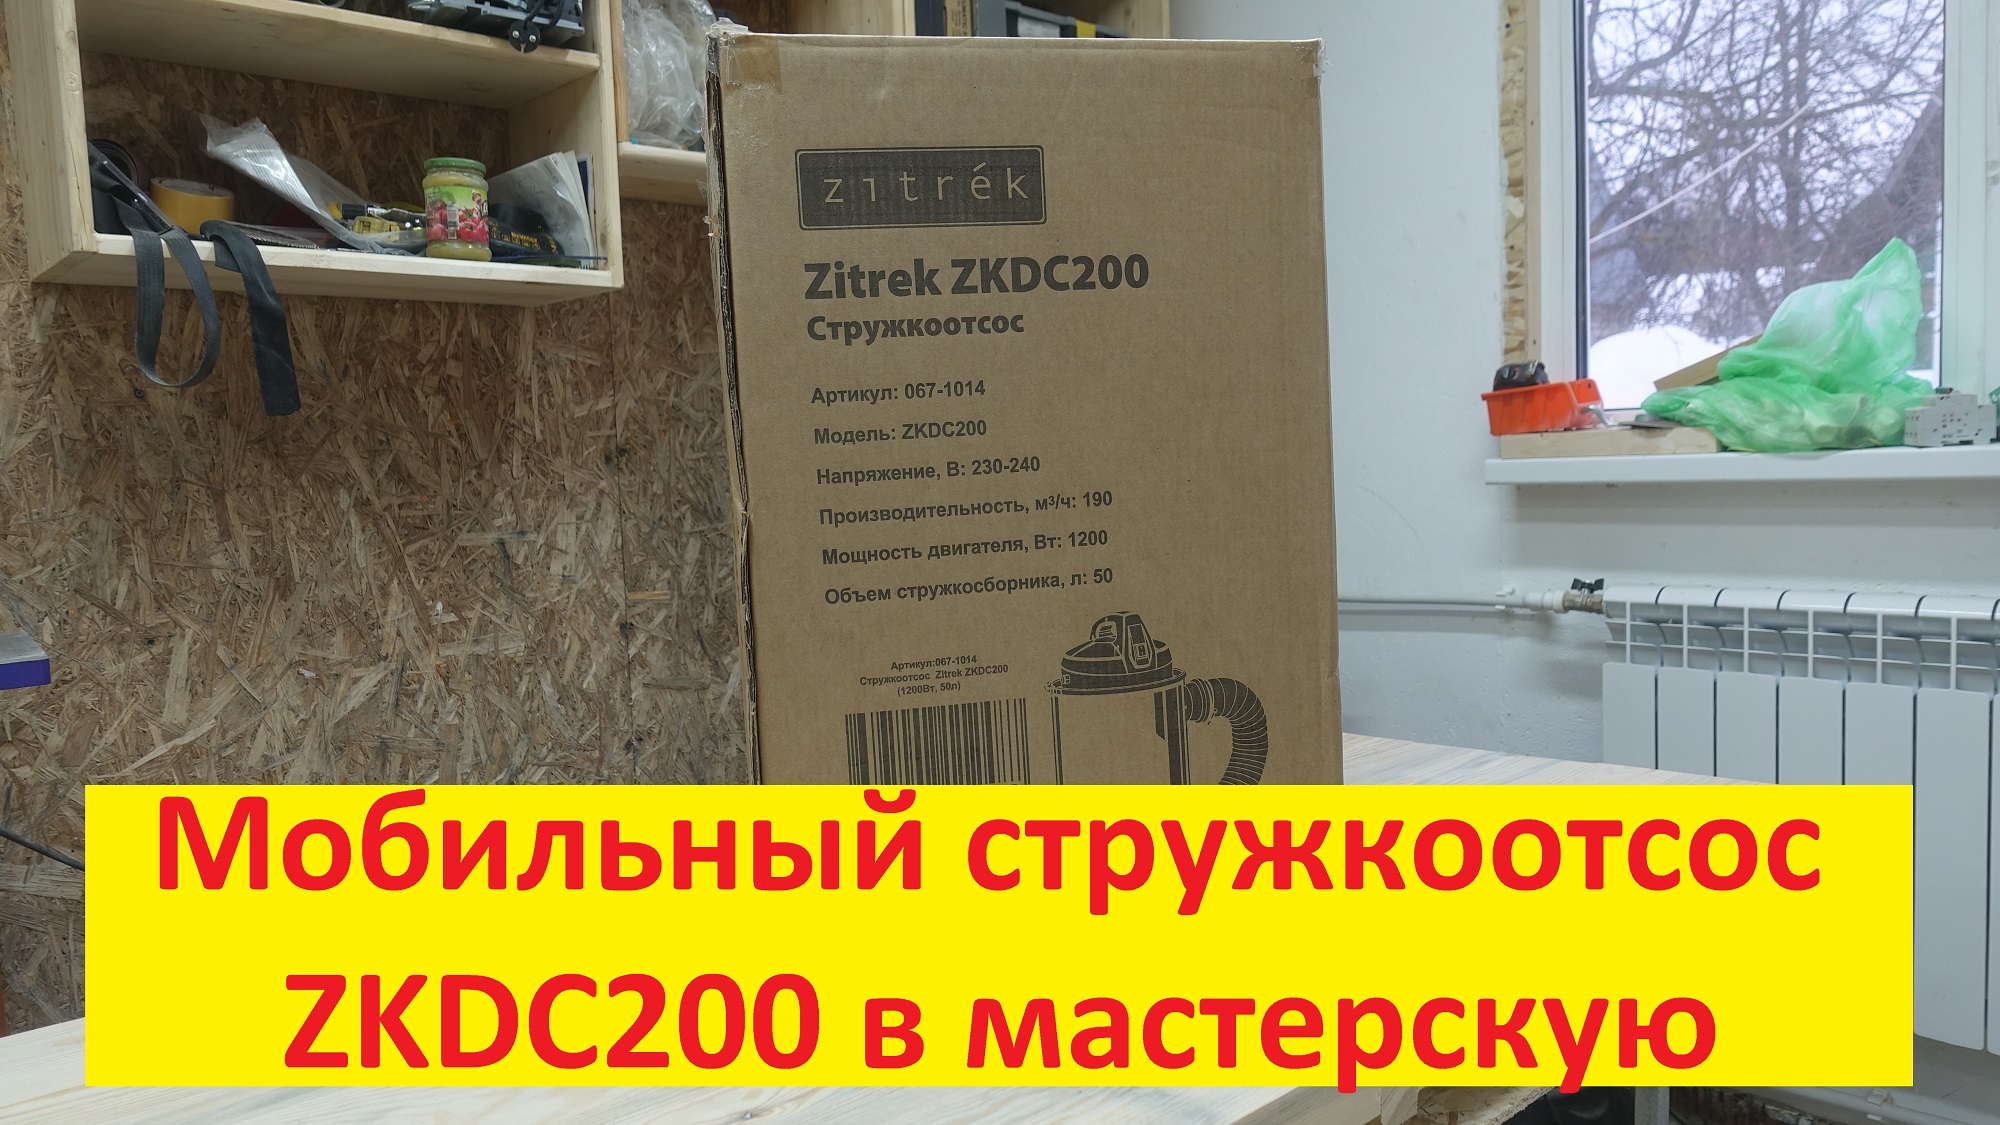 Мобильный стружкоотсос zitrek ZKDC200 в мастерскую